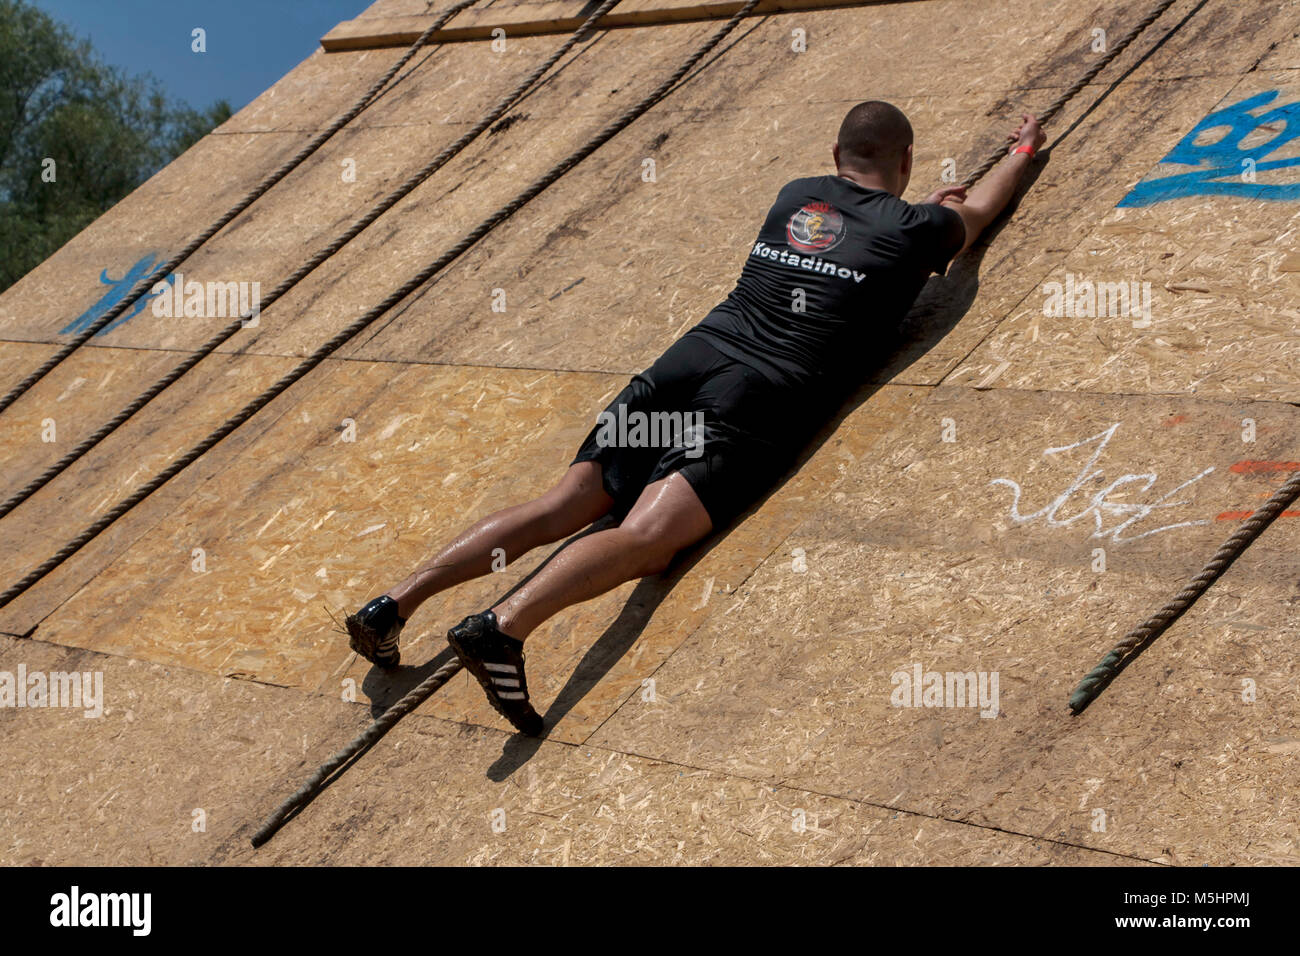 Ein Mann, der versucht, mit einem Seil auf fast senkrechten Wand zu klettern an der Stärke rennen Legion in Sofia, Bulgarien am 26. Juli 2014 statt Stockfoto